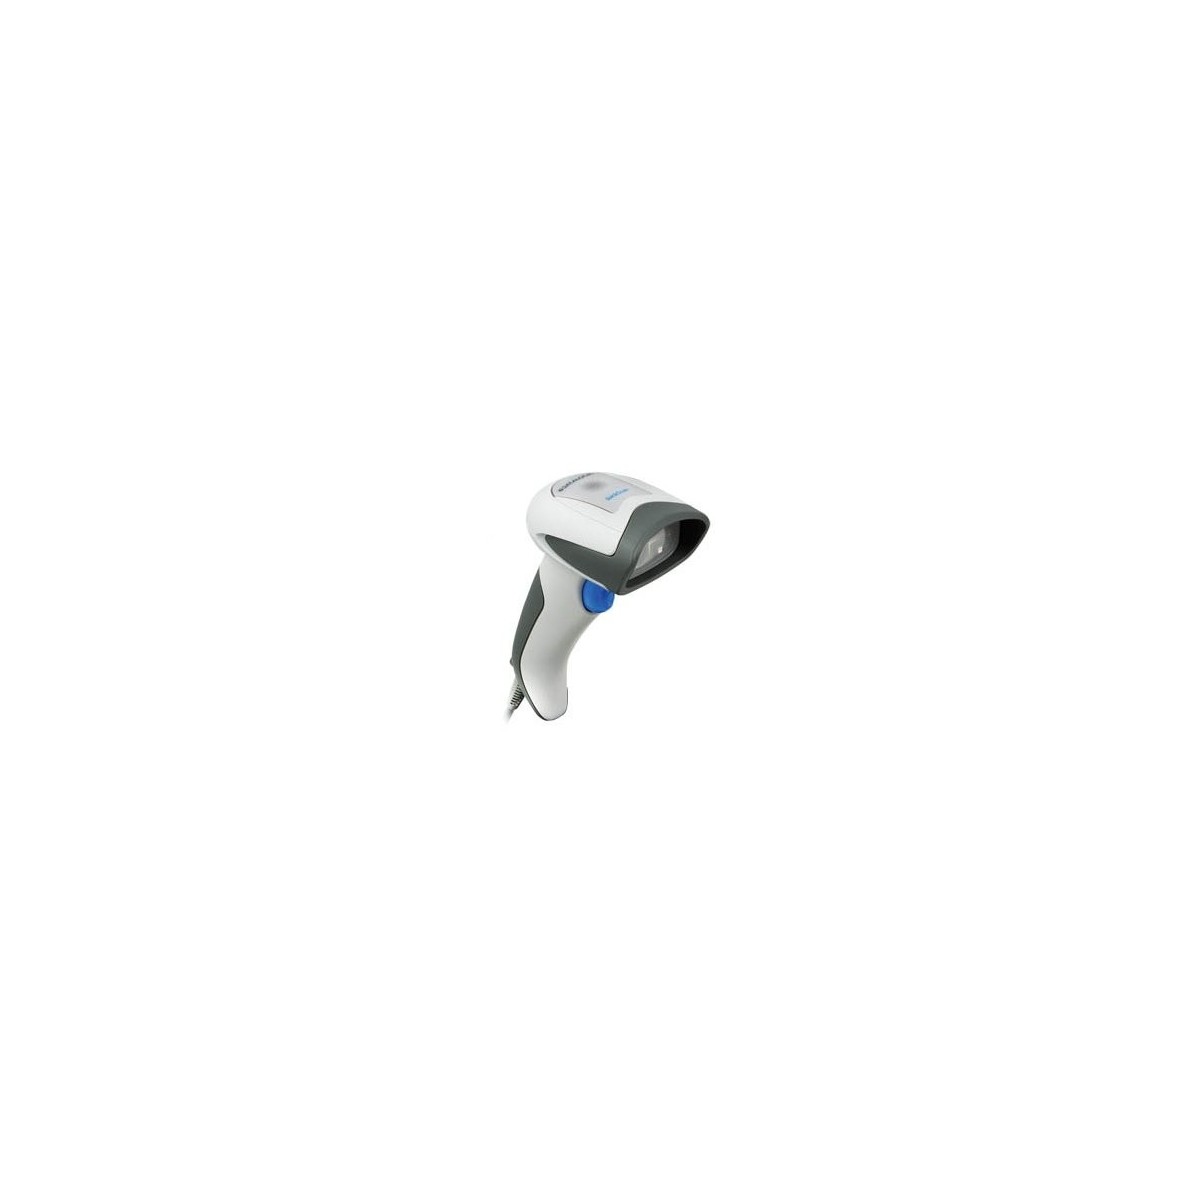 Datalogic QD2430 - Handheld bar code reader - 2D - LED - Wired - USB,RS-232 - Black - White